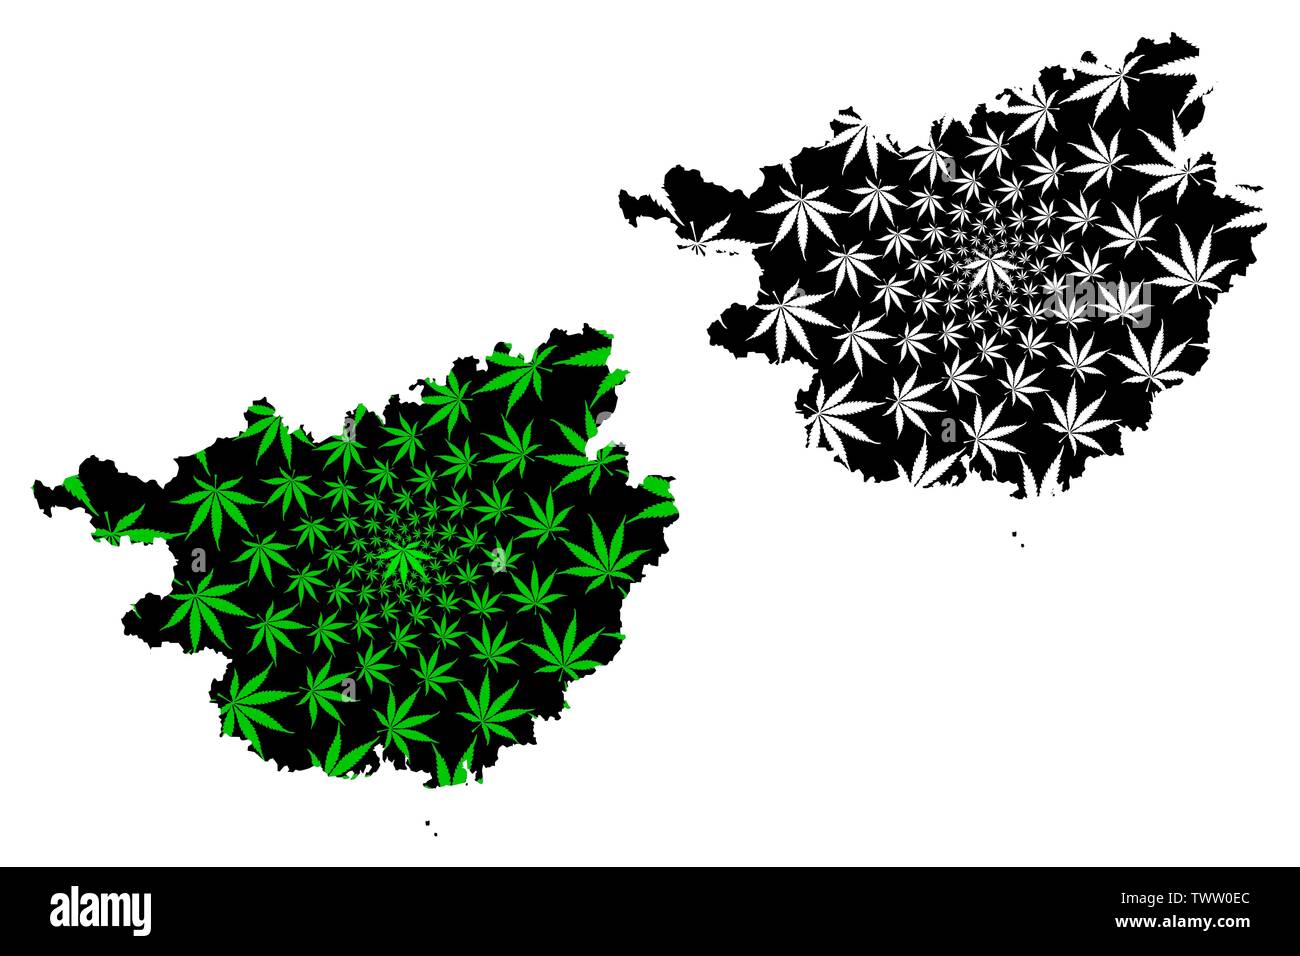 Der Autonomen Region Guangxi Zhuang (China, Volksrepublik China, VR China) Karte cannabis Blatt grün und schwarz ausgelegt ist, Guangxi (Gvangjsih) Karte gemacht Stock Vektor